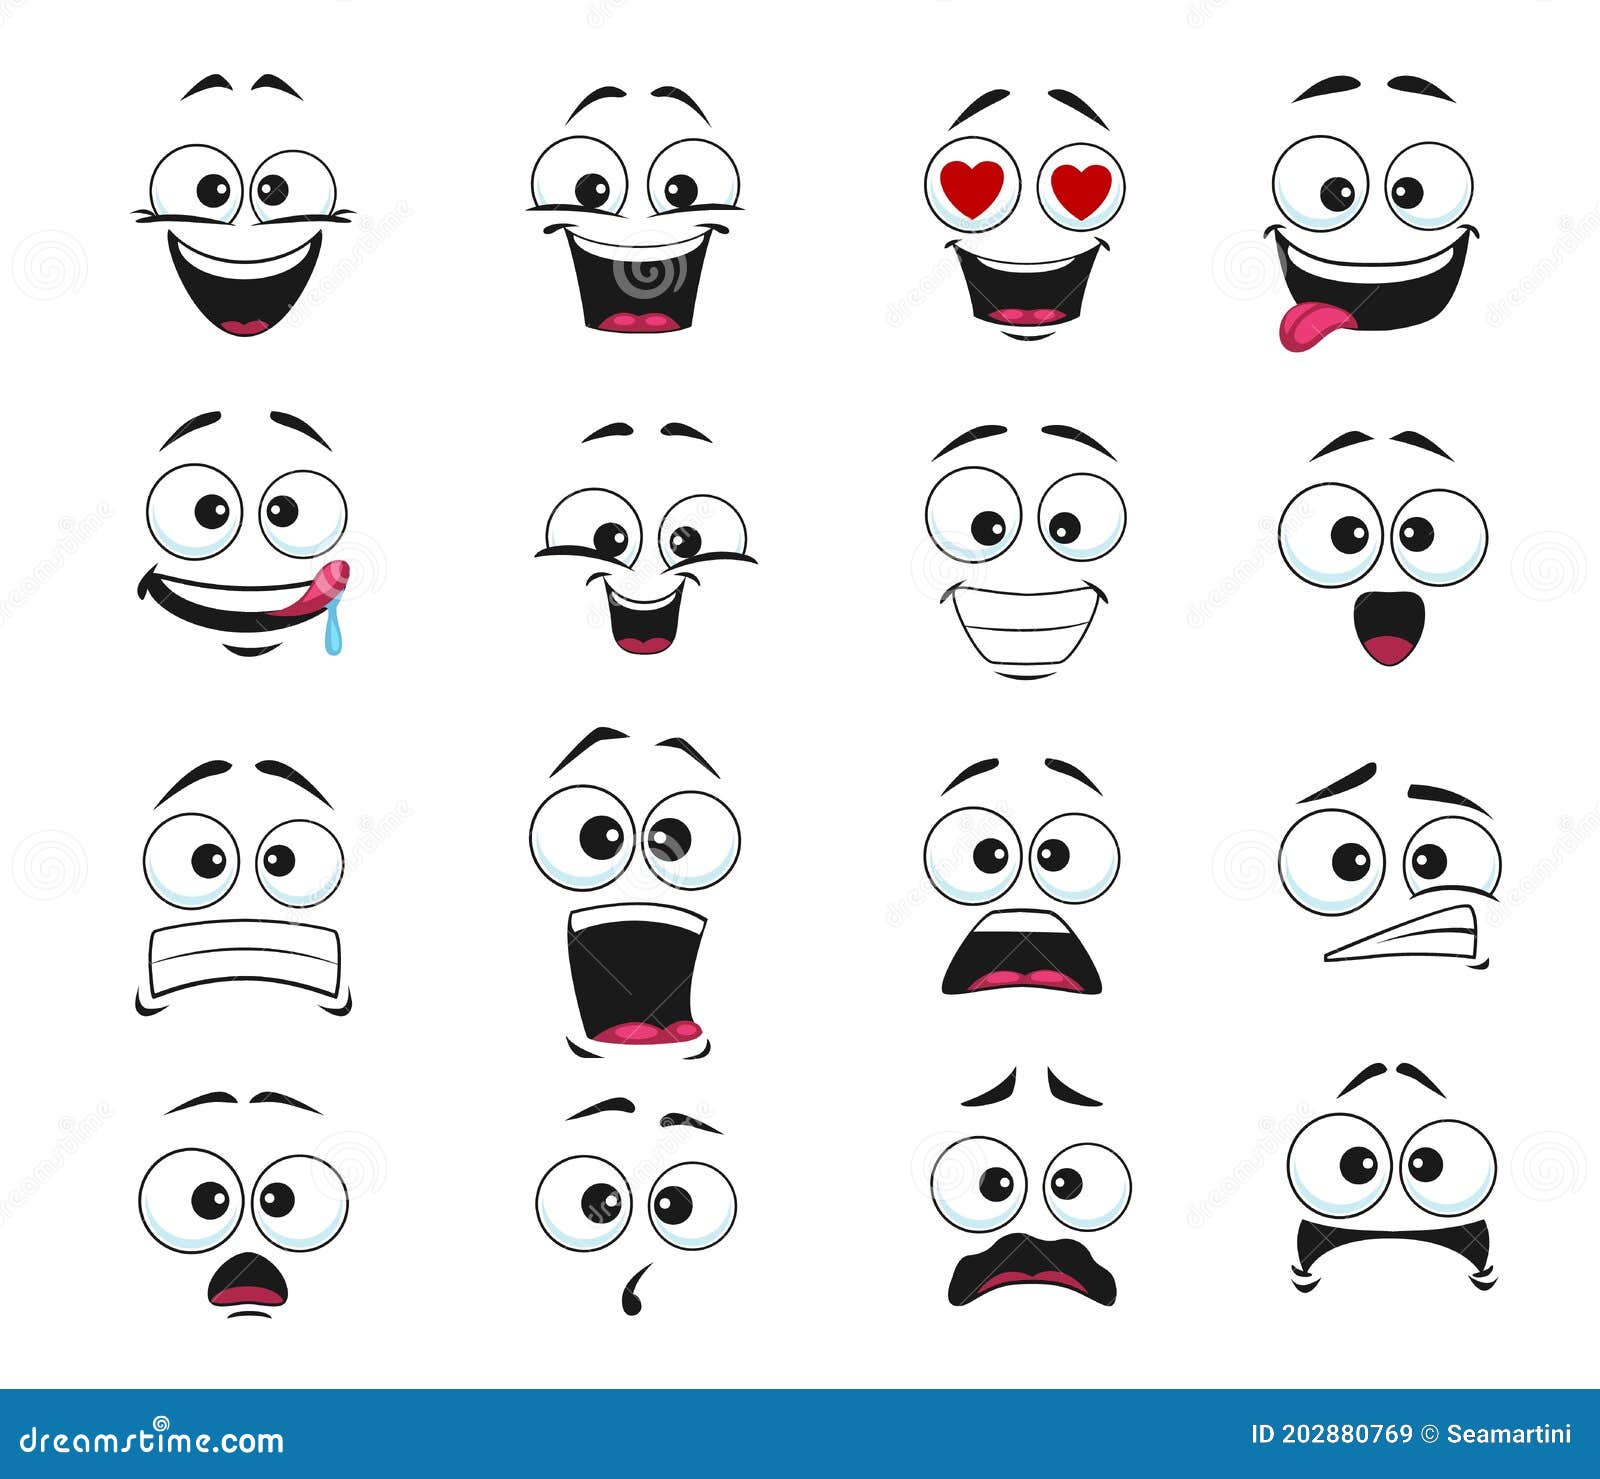 Scared emoticon smiley cartoon, Stock vector